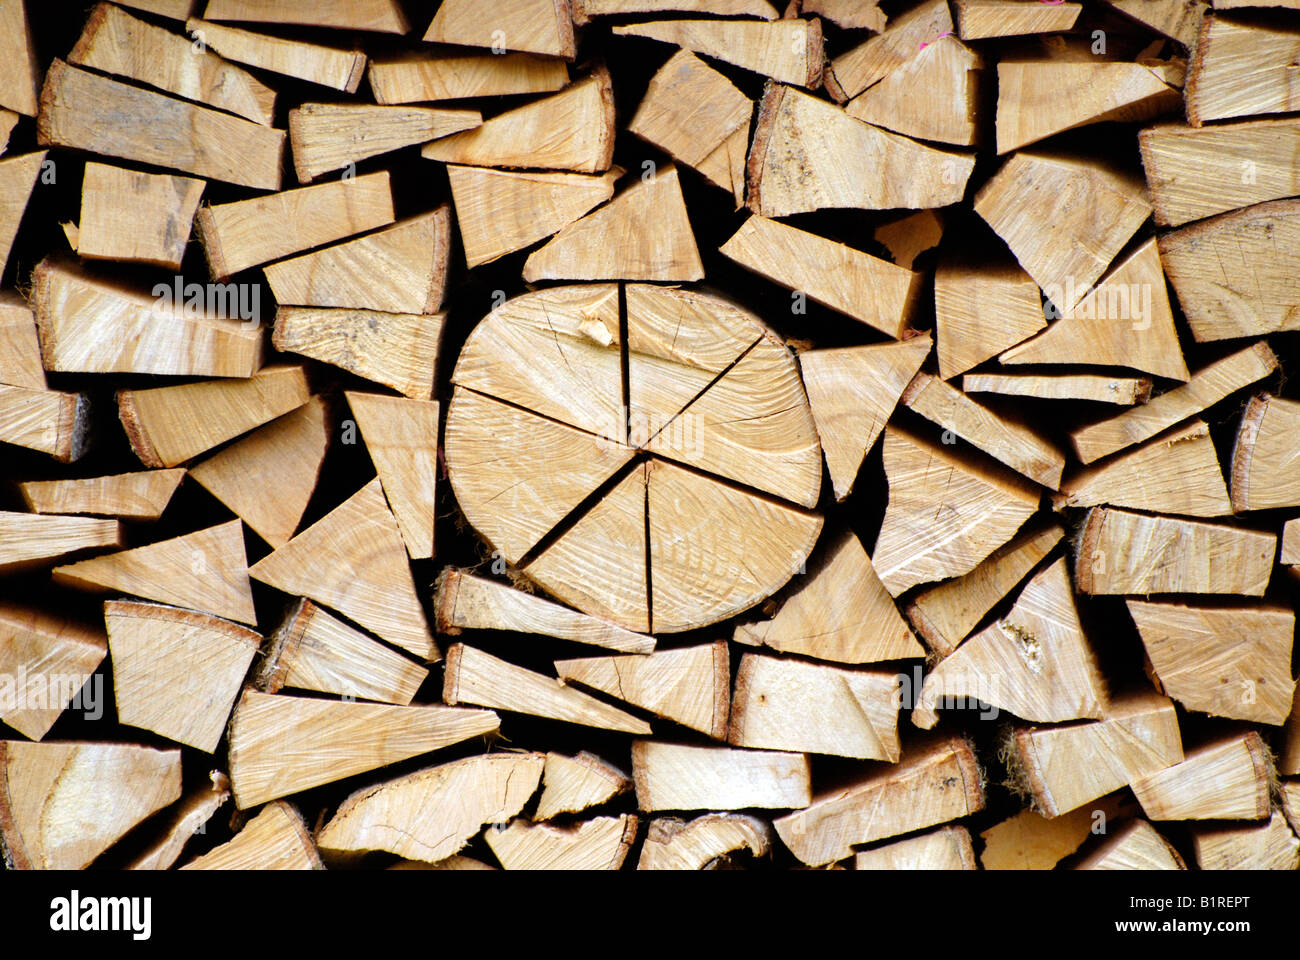 Beech wood, firewood, stacked woodpile Stock Photo